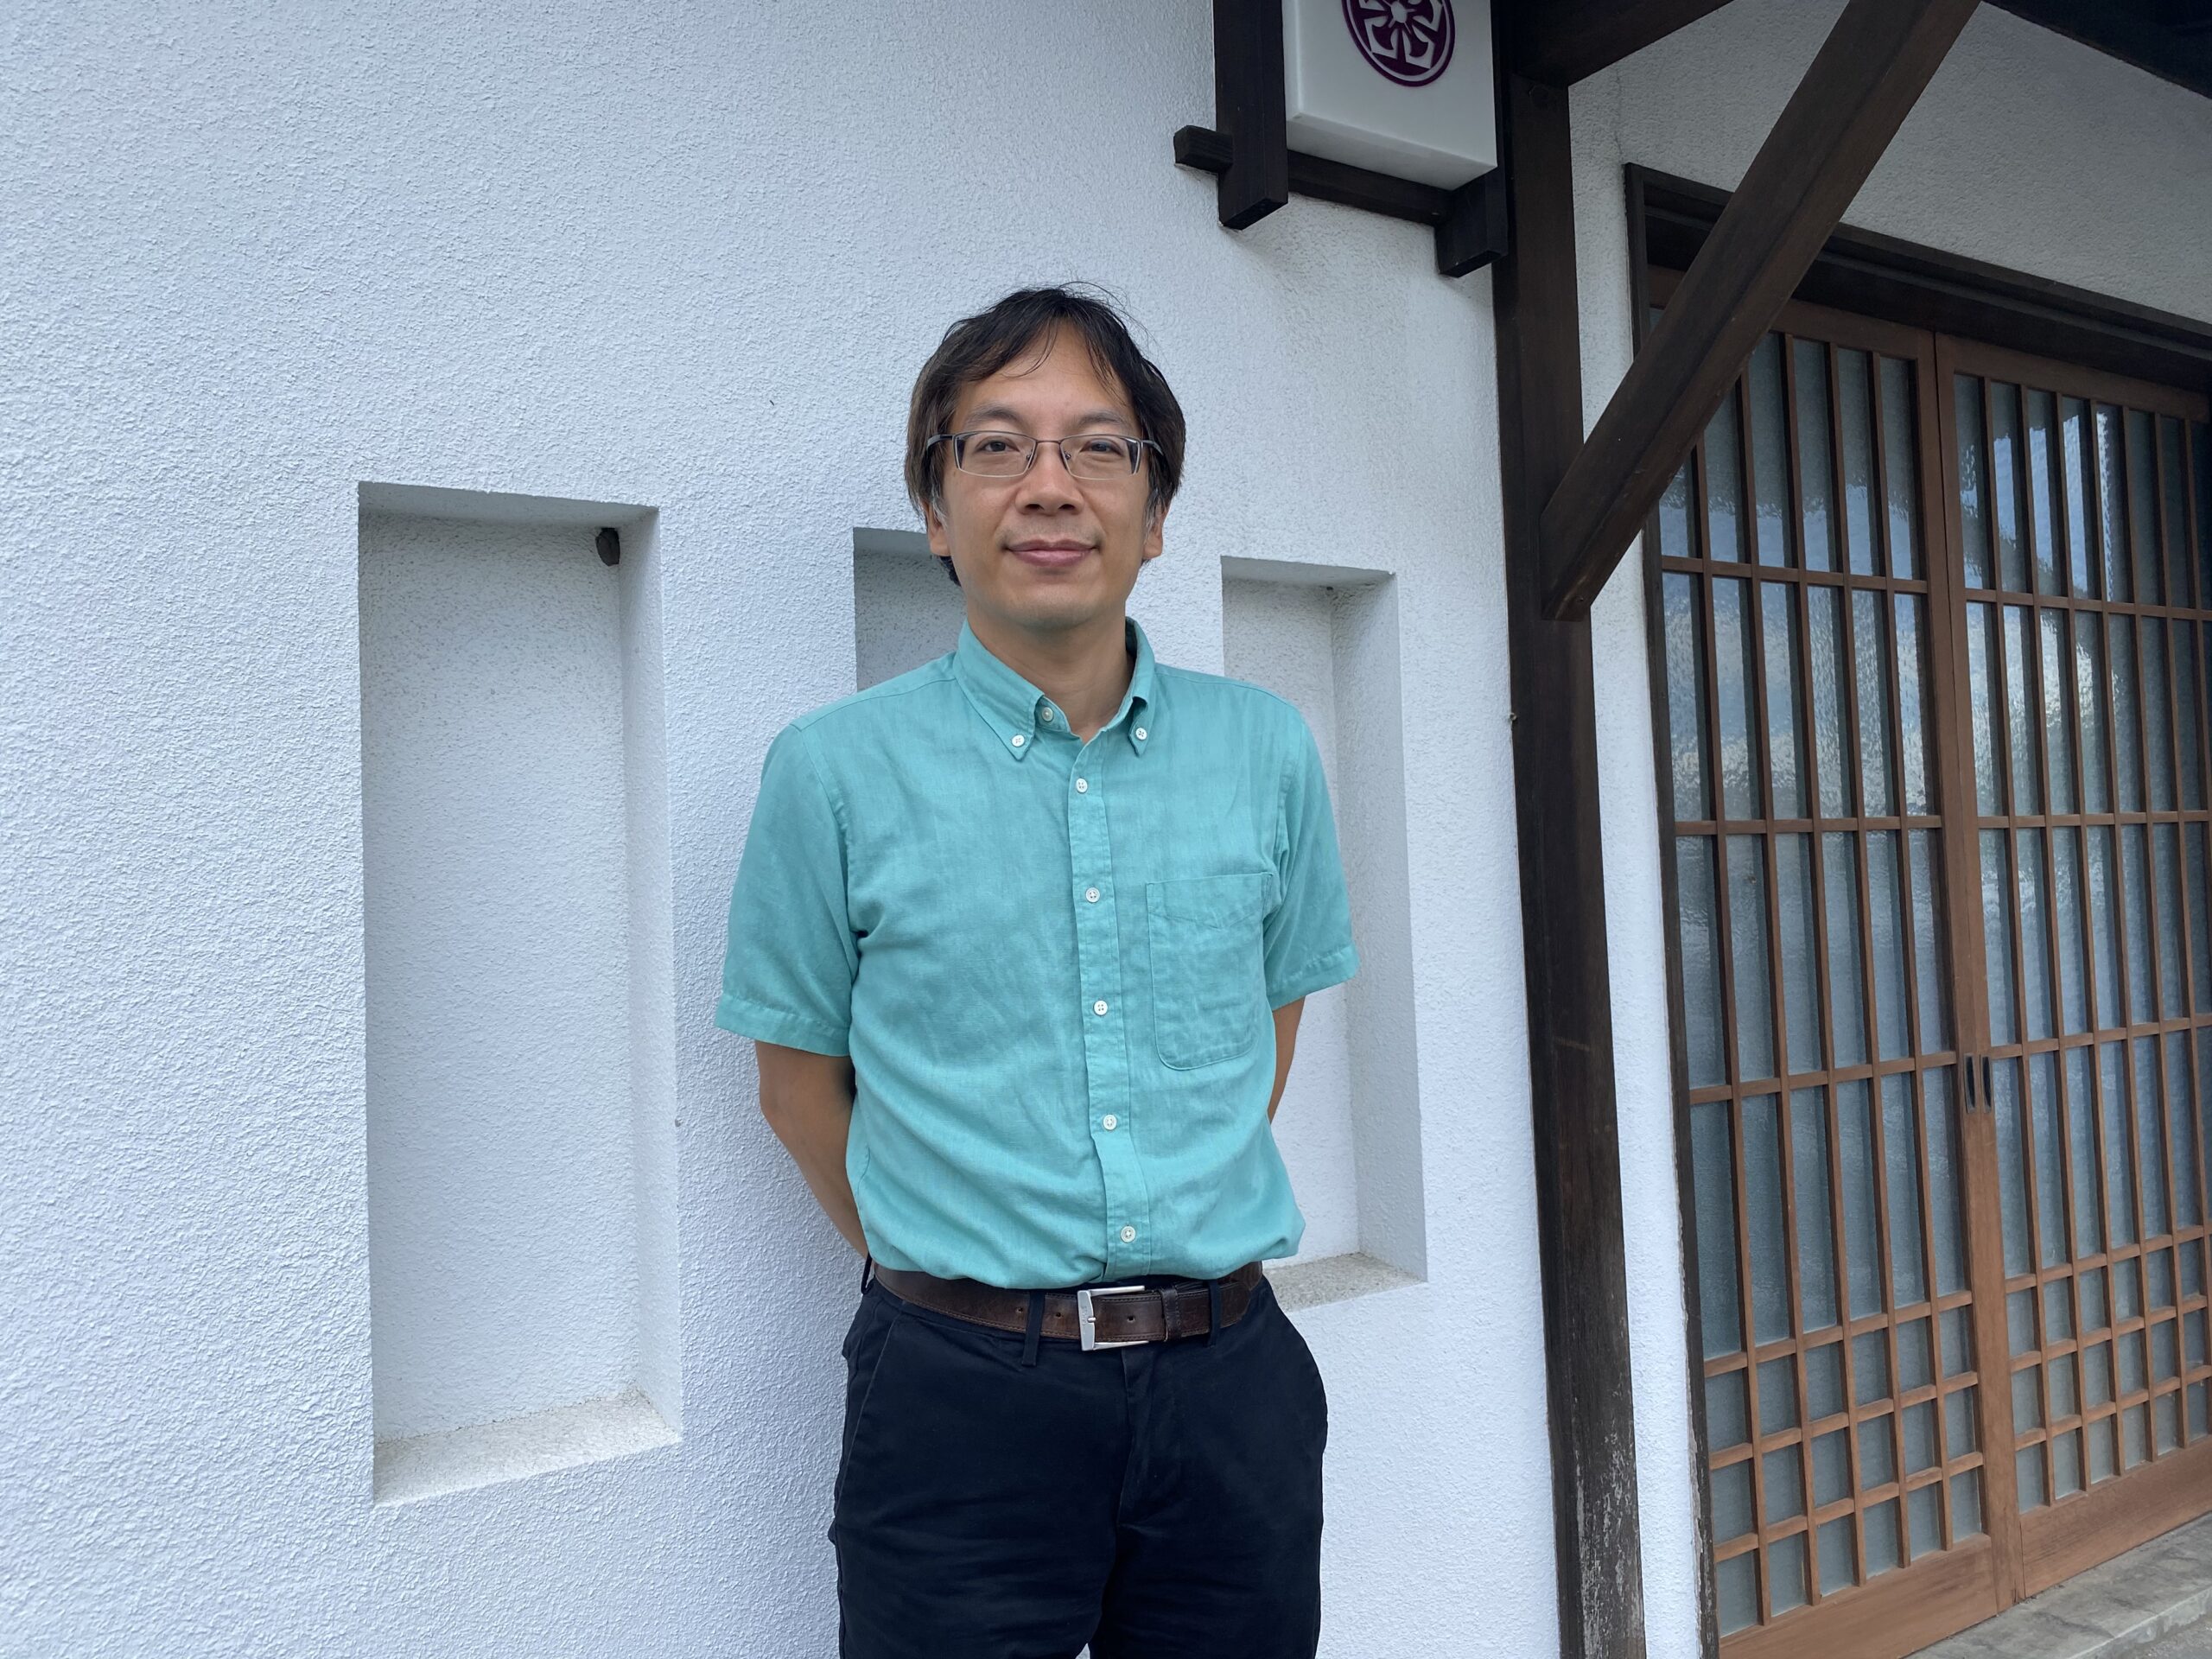 ヤフー社員として長く福島復興関連の仕事に携わってきた森さんは、福島ではすっかりおなじみの顔。